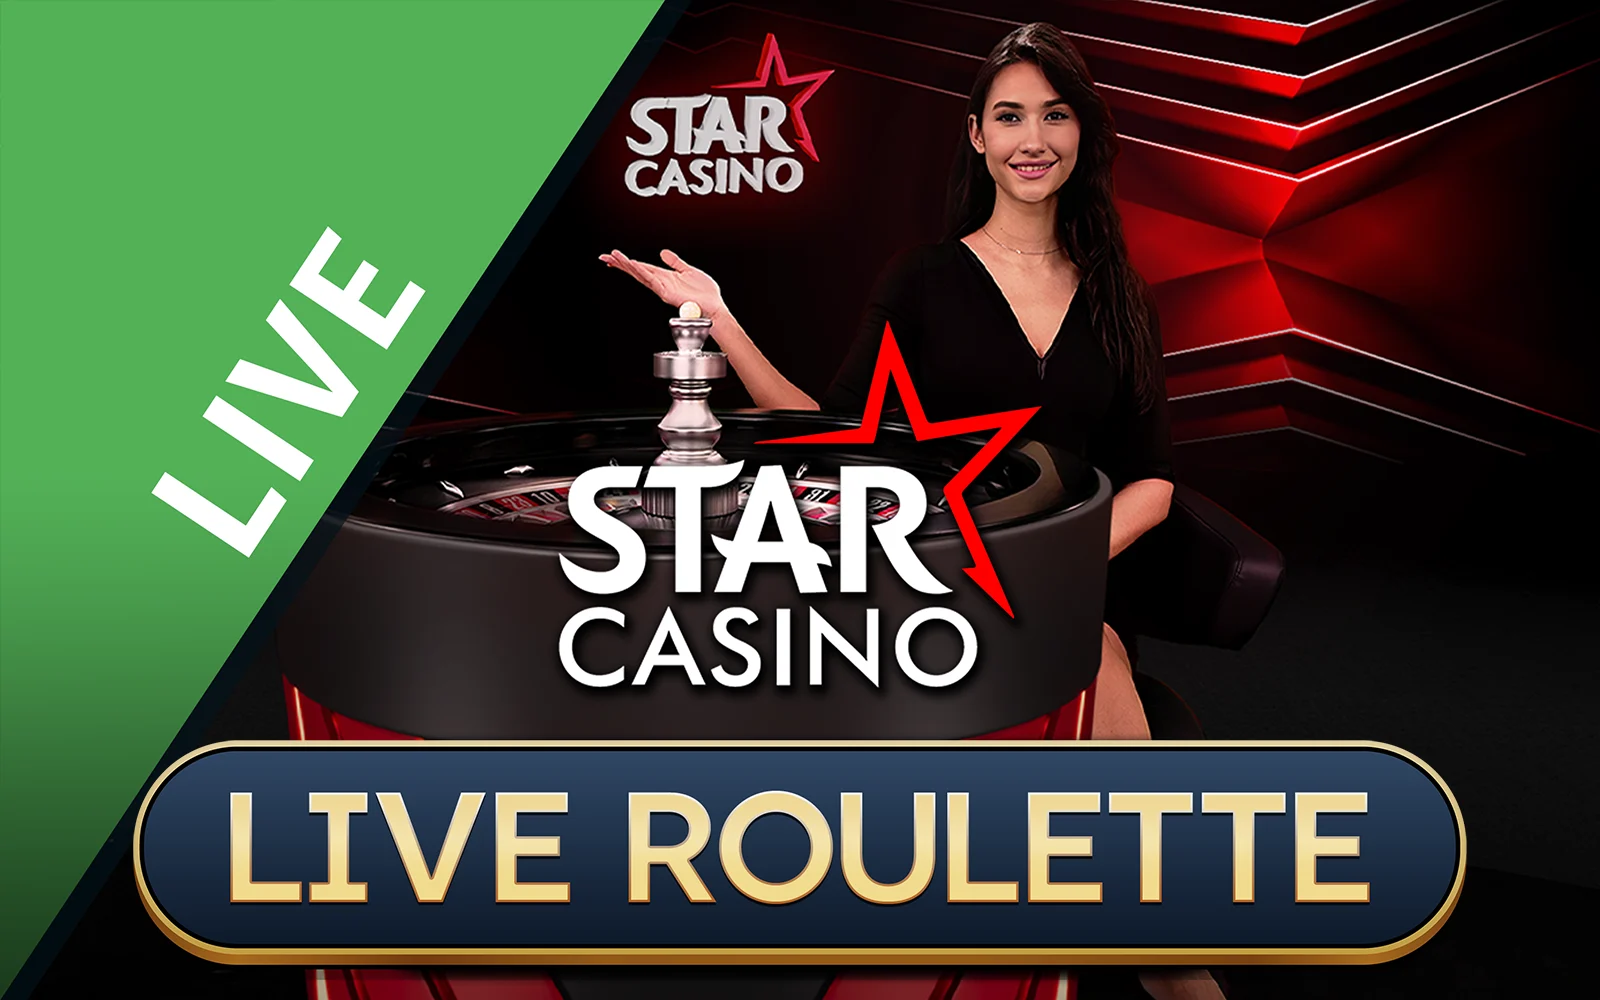 Chơi Starcasino Roulette trên sòng bạc trực tuyến Starcasino.be